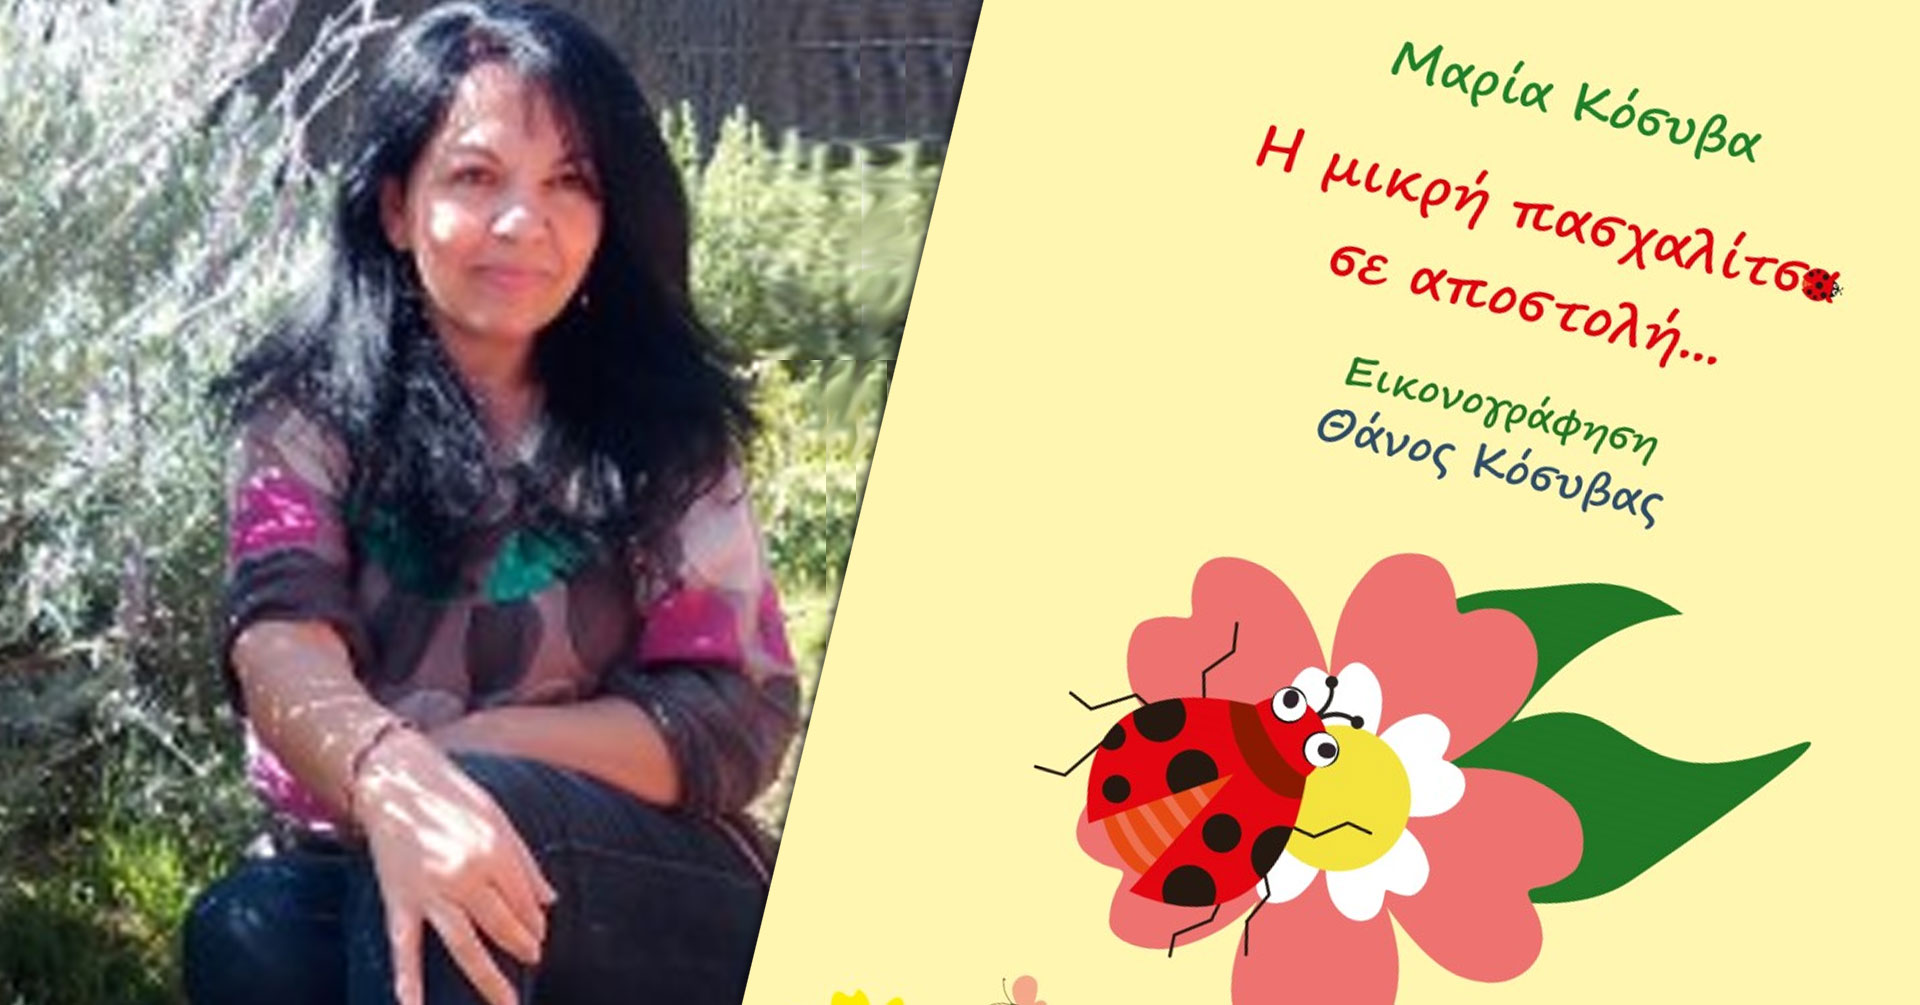 Μαρία Κόσυβα, μιλάει στη Μάγδα Παπαδημητρίου-Σαμοθράκη για το βιβλίο «Η μικρή πασχαλίτσα σε αποστολή…»